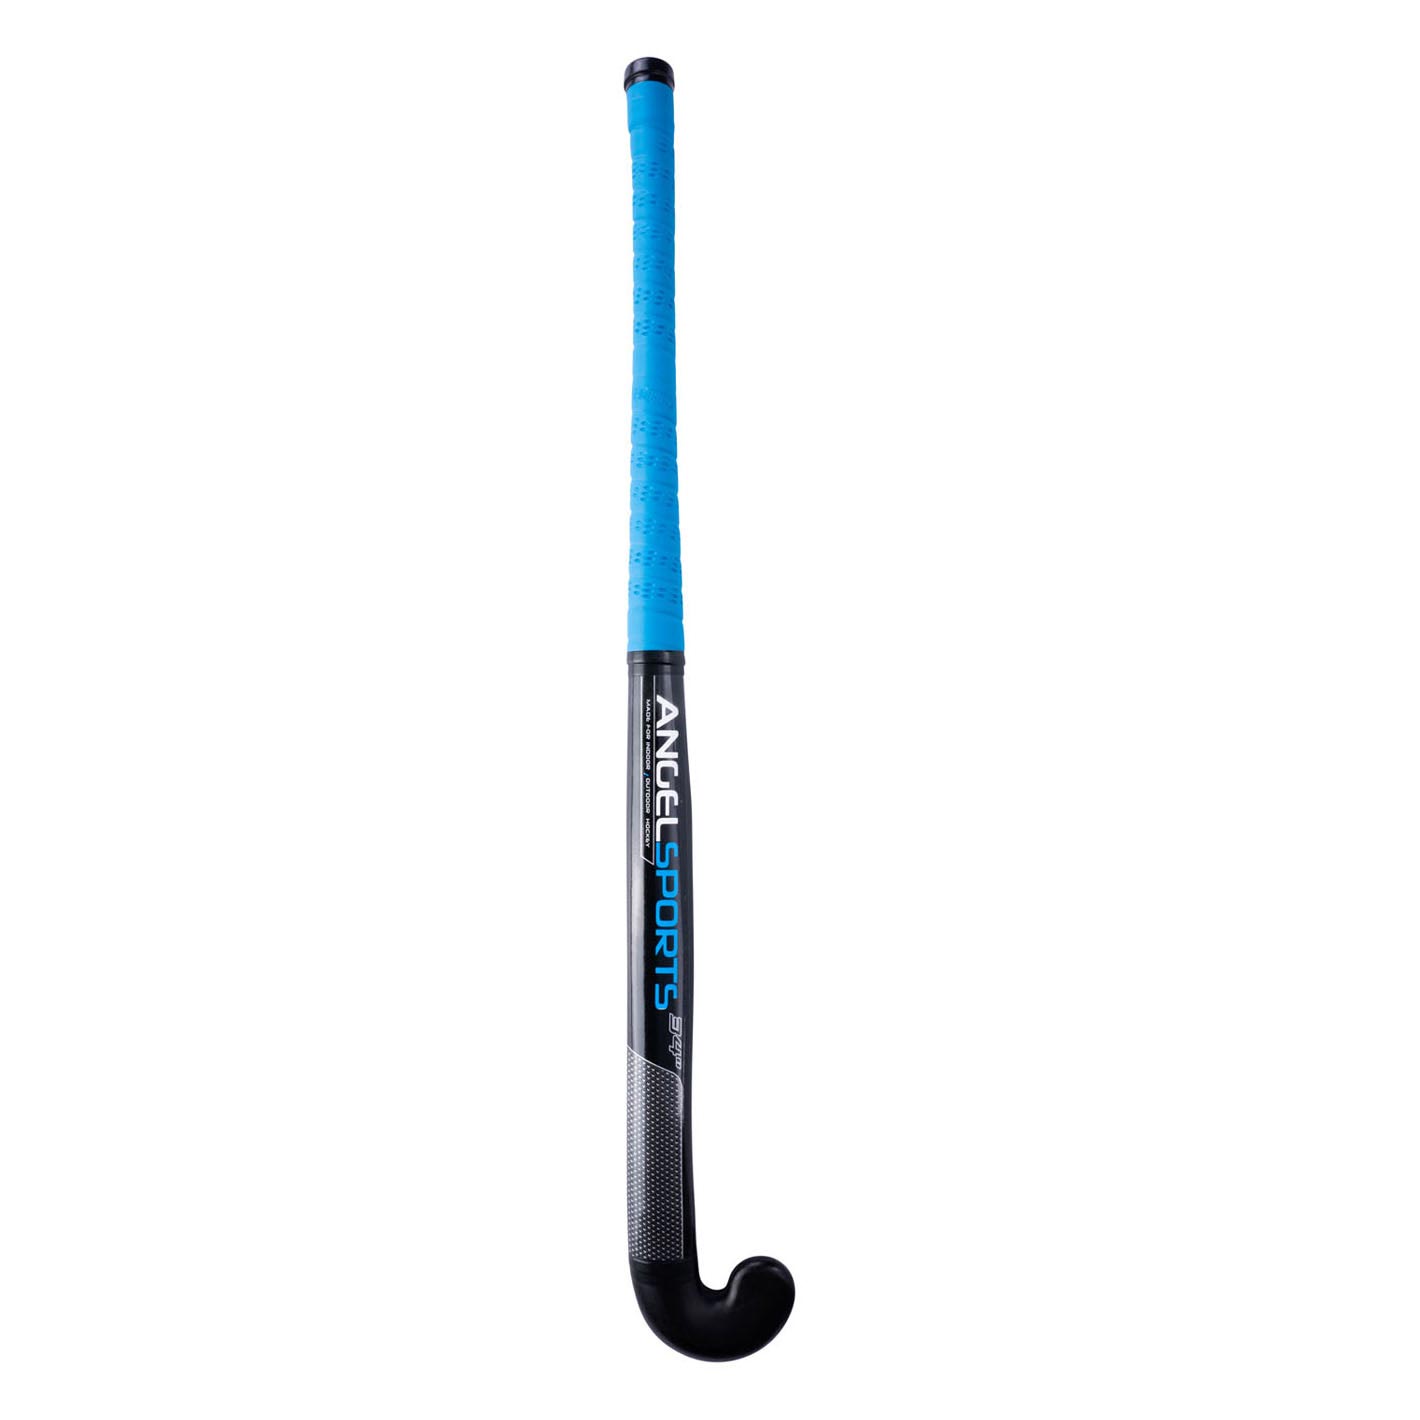 Bâton de hockey Bleu 36''